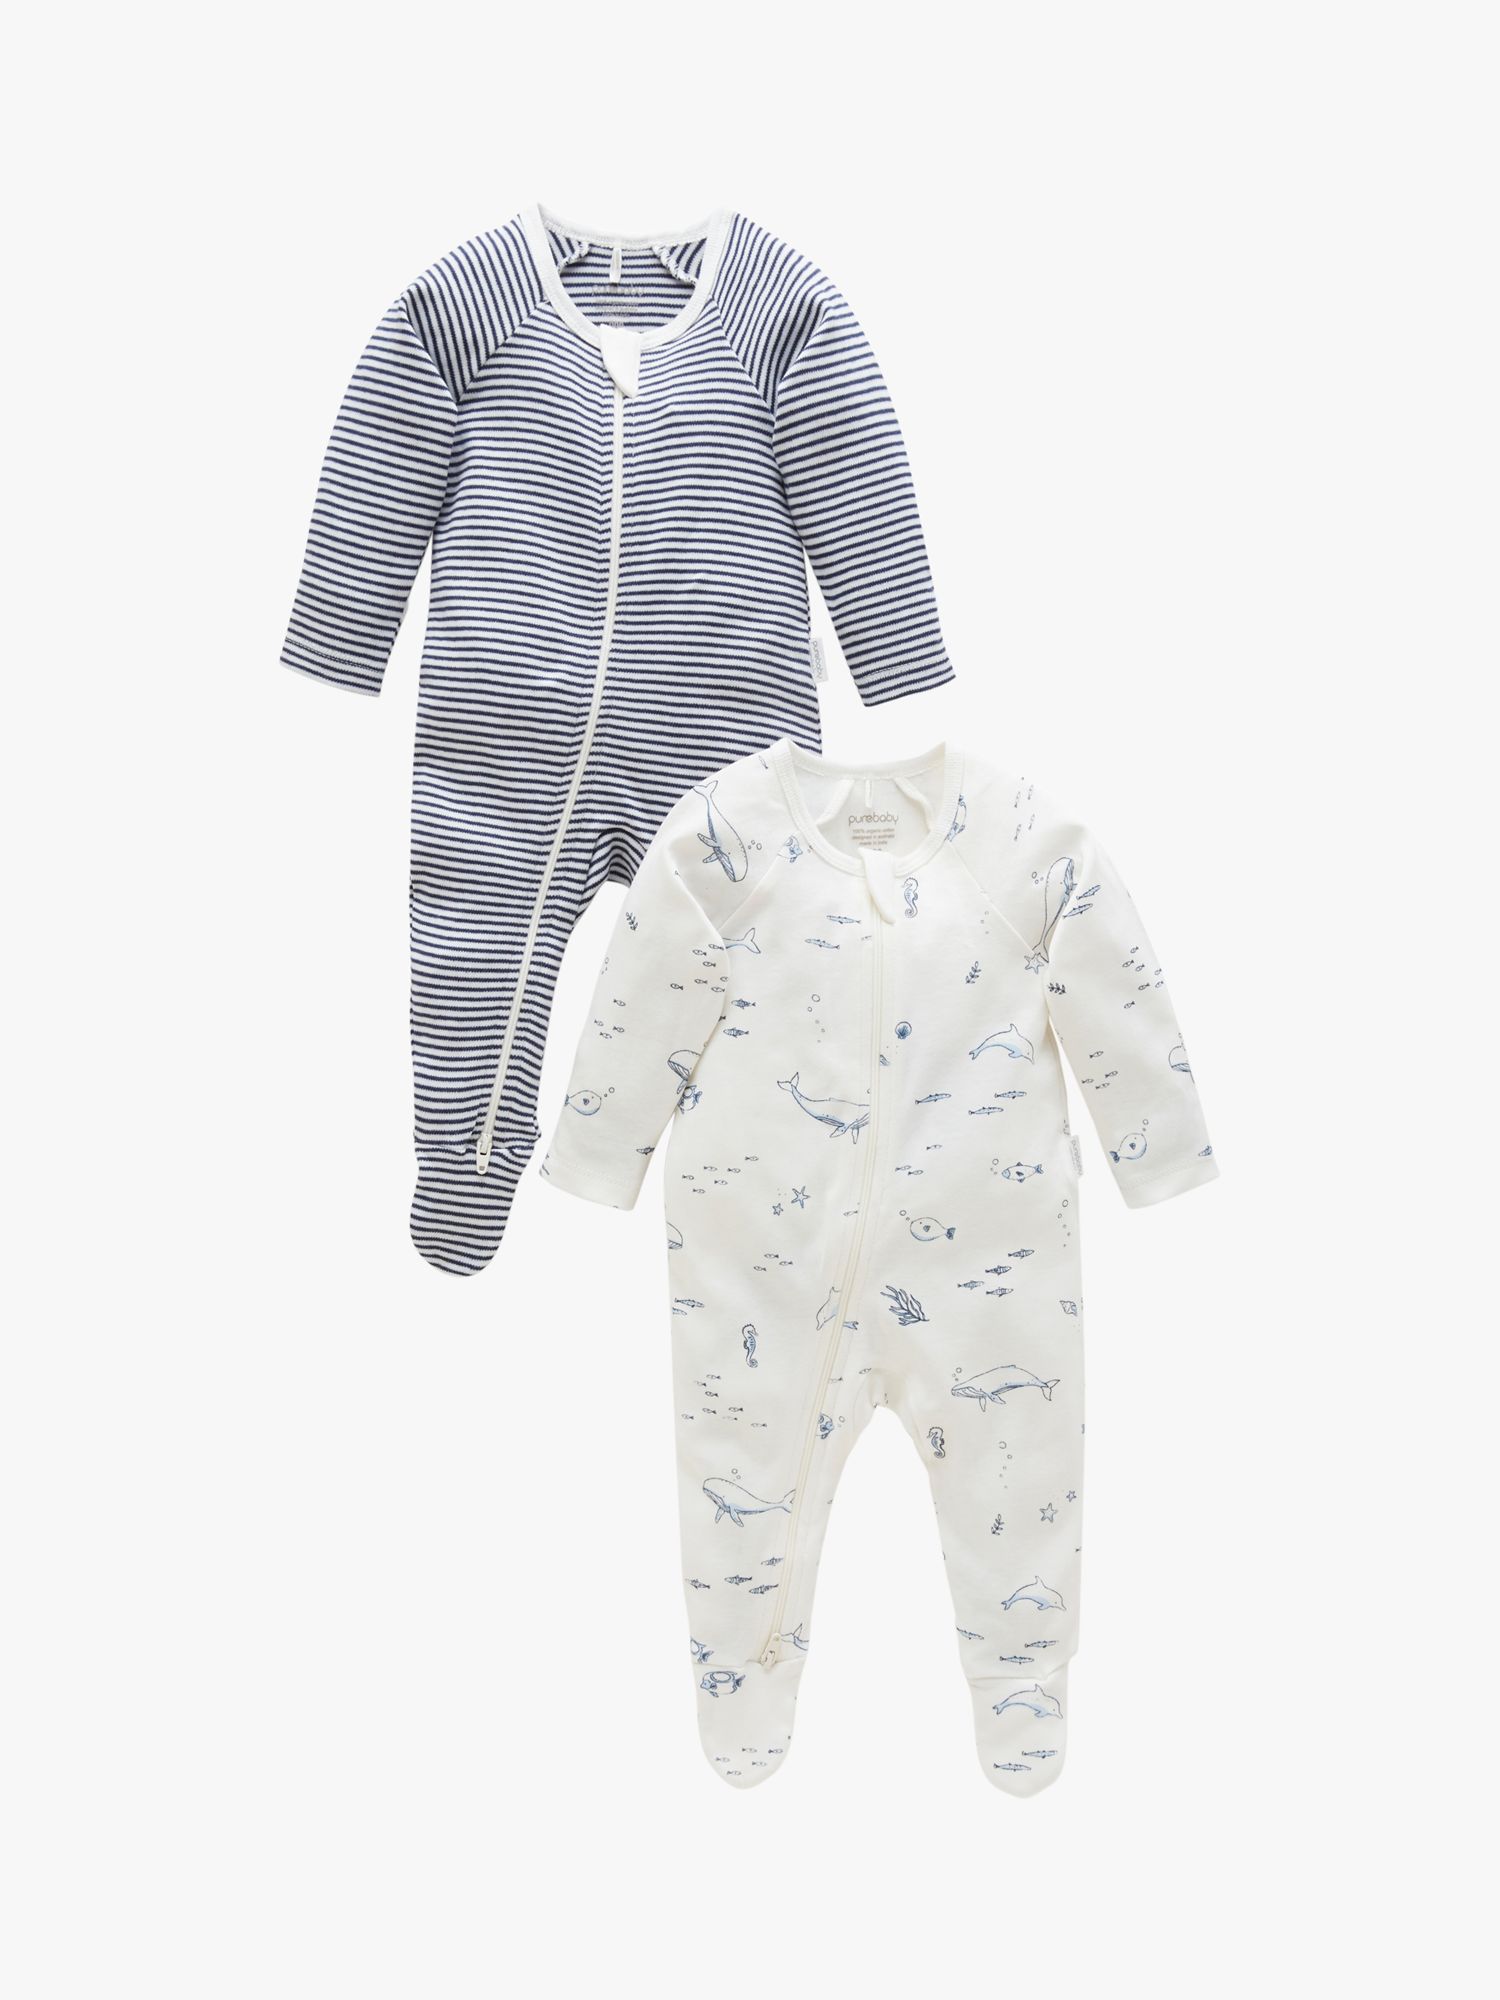 Purebaby Baby Organic Cotton Whale Stripe Zip Sleepsuit, Pack of 2, Vanilla/Nautical, Newborn